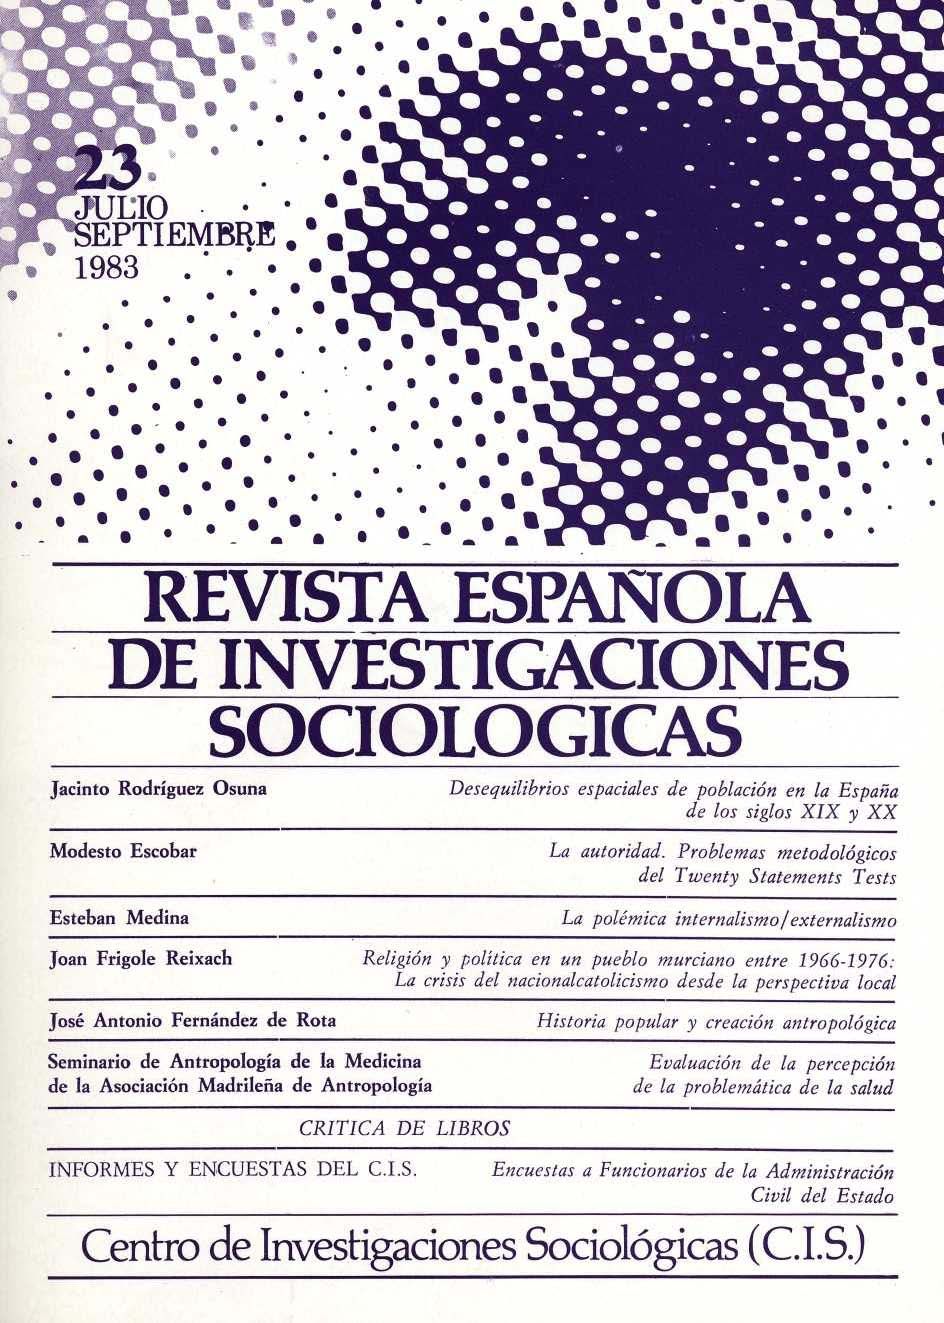 REIS. Revista Española de Investigaciones Sociológicas núm. 23